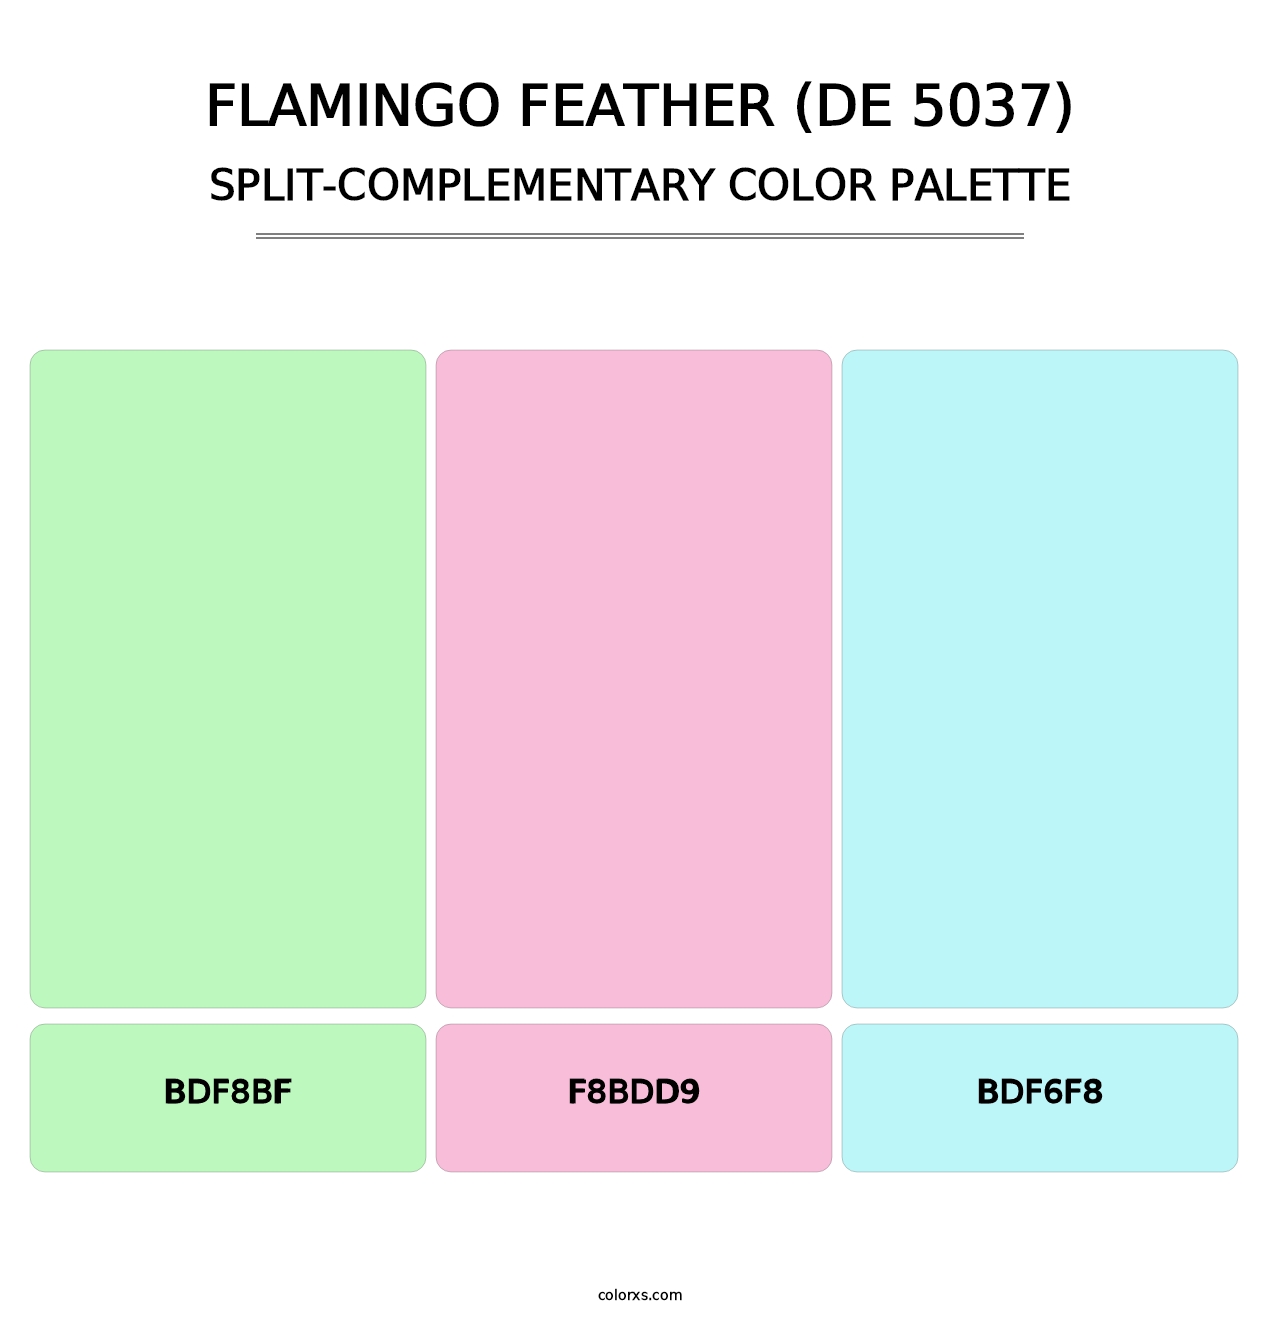 Flamingo Feather (DE 5037) - Split-Complementary Color Palette